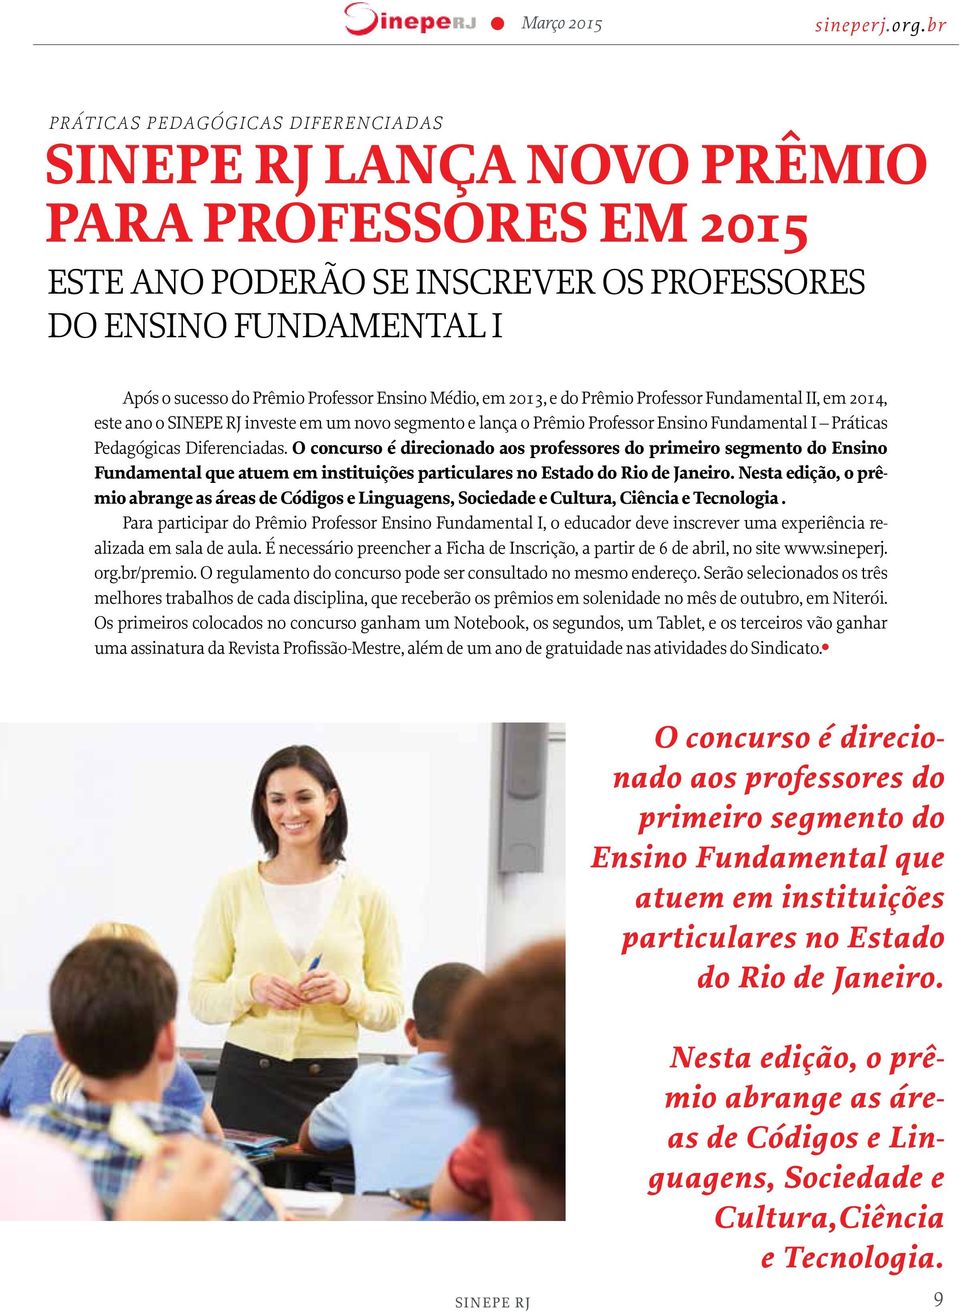 O concurso é direcionado aos professores do primeiro segmento do Ensino Fundamental que atuem em instituições particulares no Estado do Rio de Janeiro.